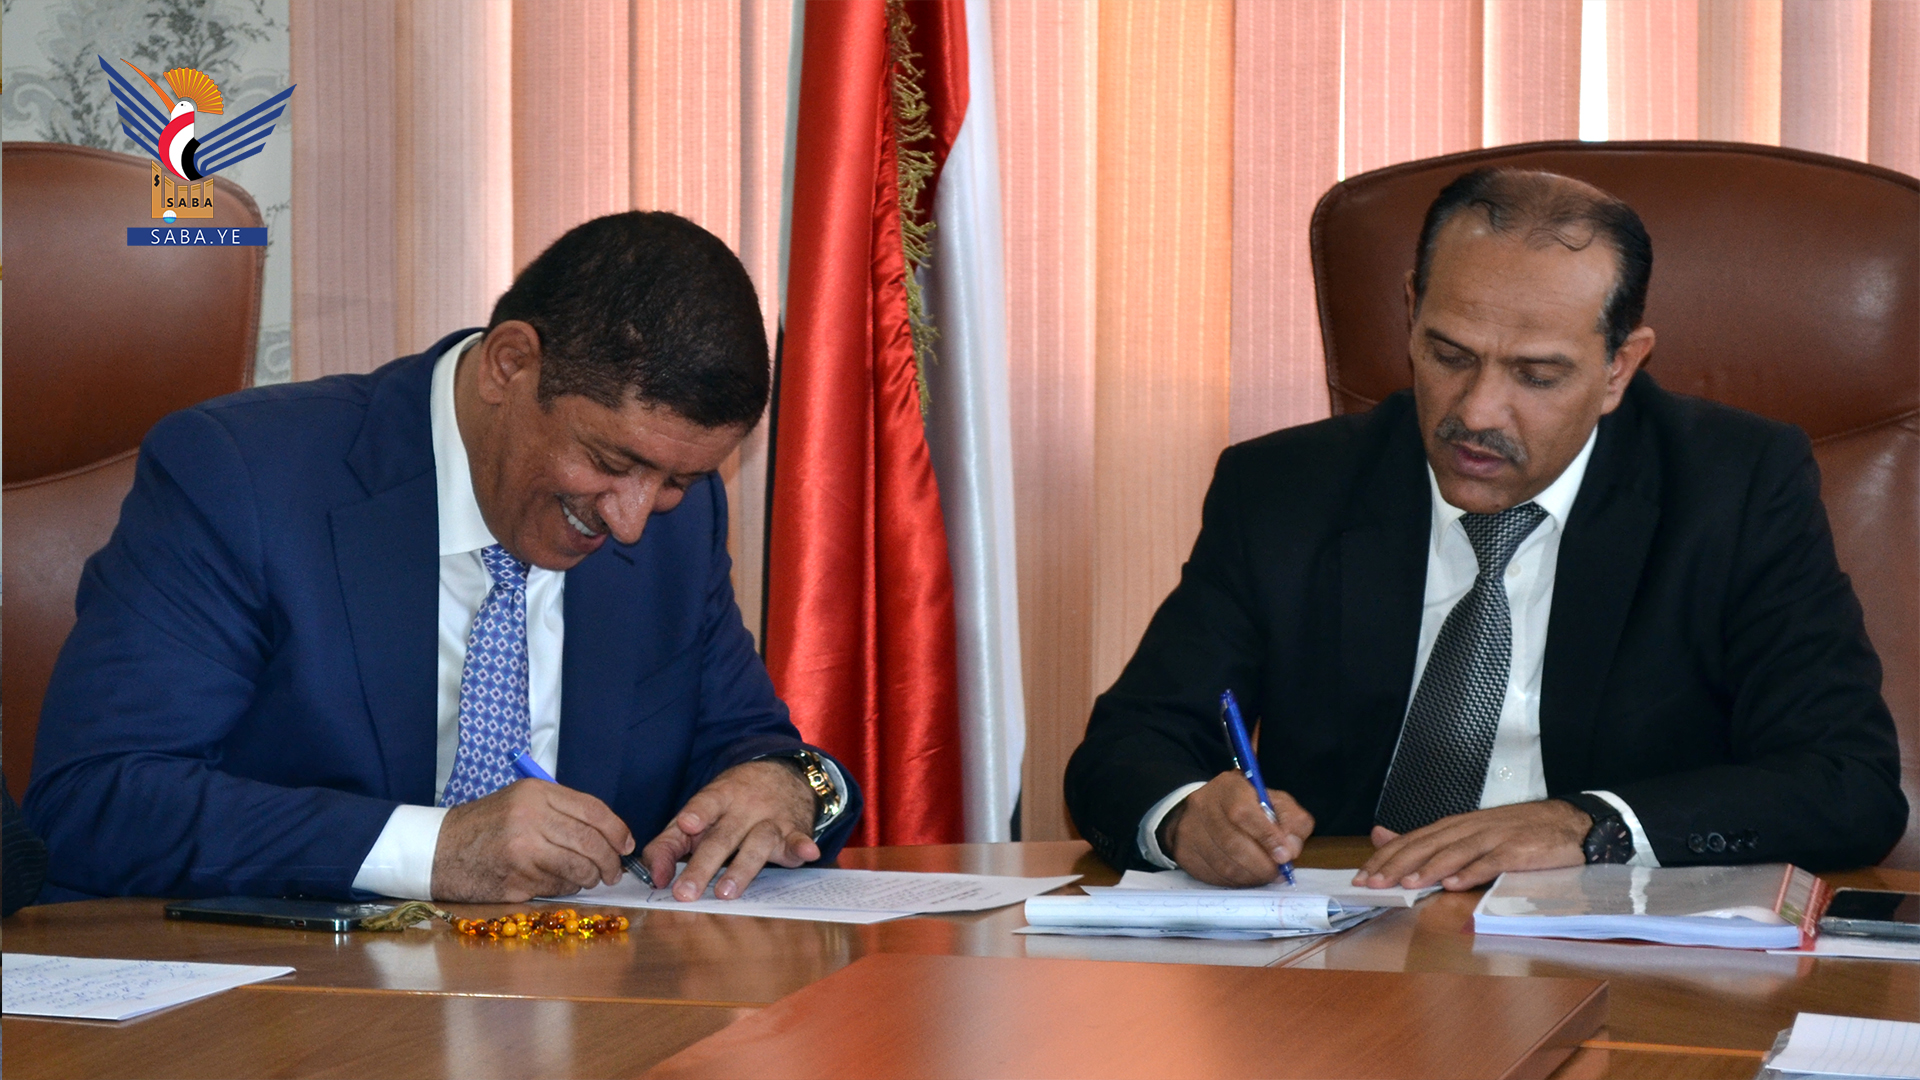  Le ministère de l'électricité et la chambre de commerce signent un protocole d'accord pour l'investissement dans l'énergie